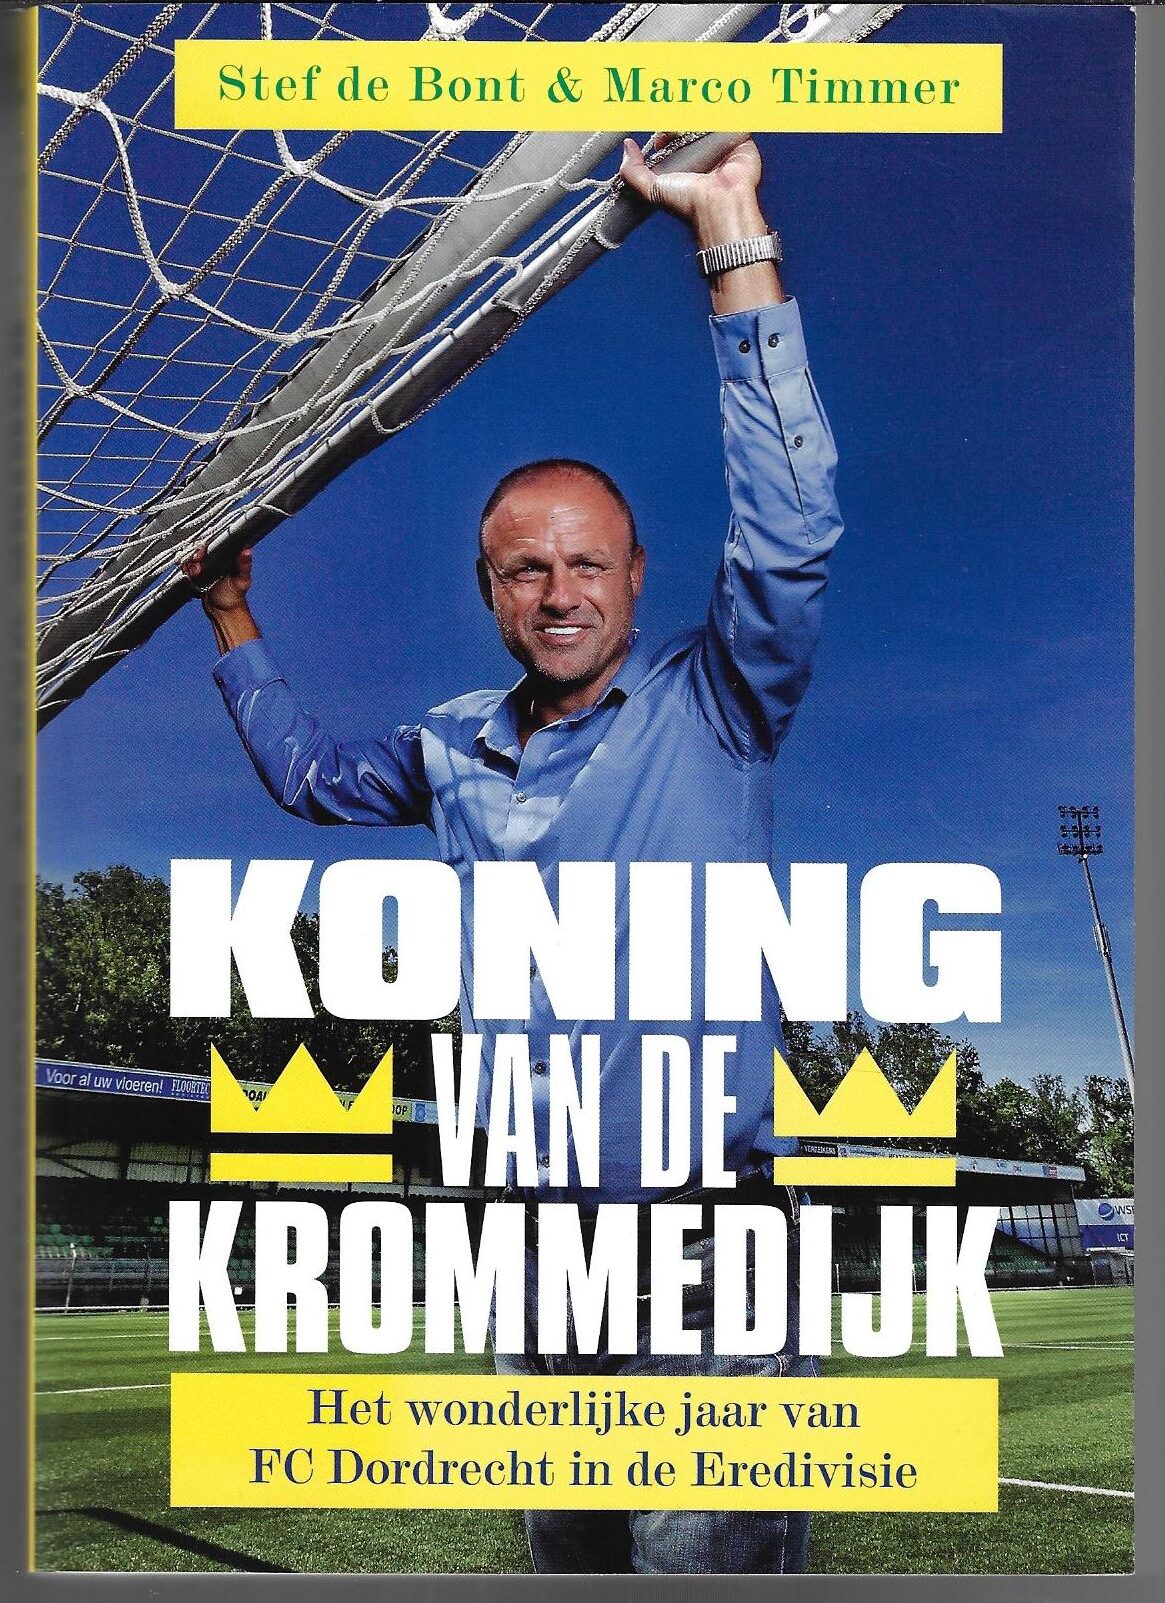 Bont, Stef de & Timmer, Marco - Koning van de Krommedijk -Het wonderlijke jaar van FC Dordrecht in de Eredivisie